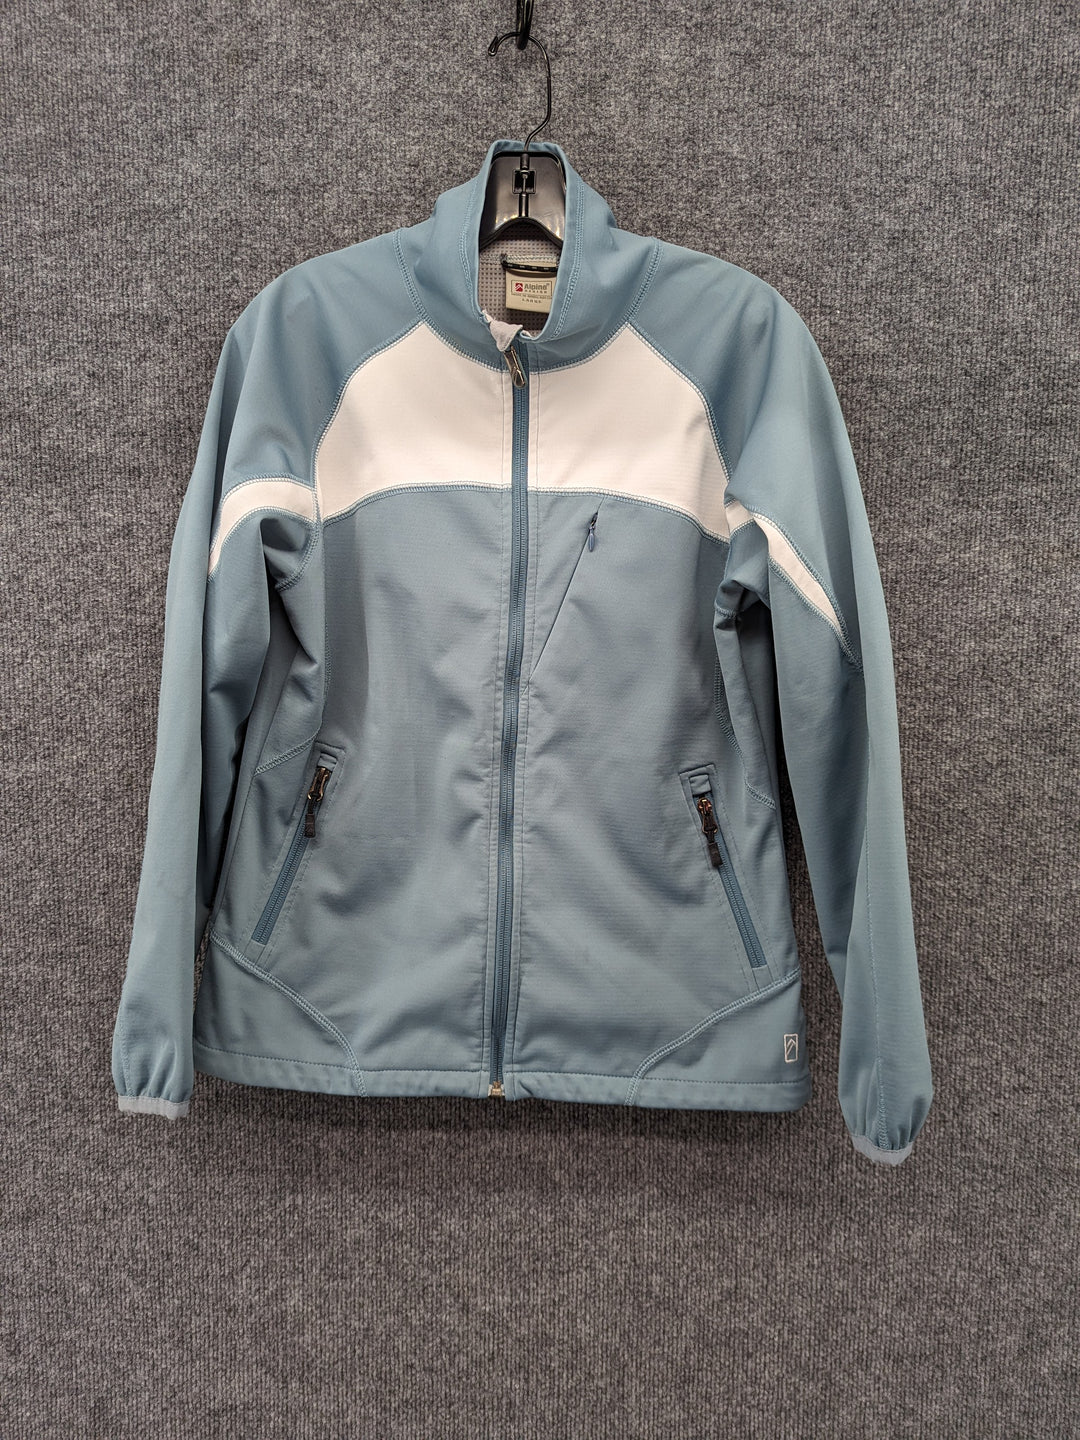 Alpine Design Size W Large Women's Softshell Jacket